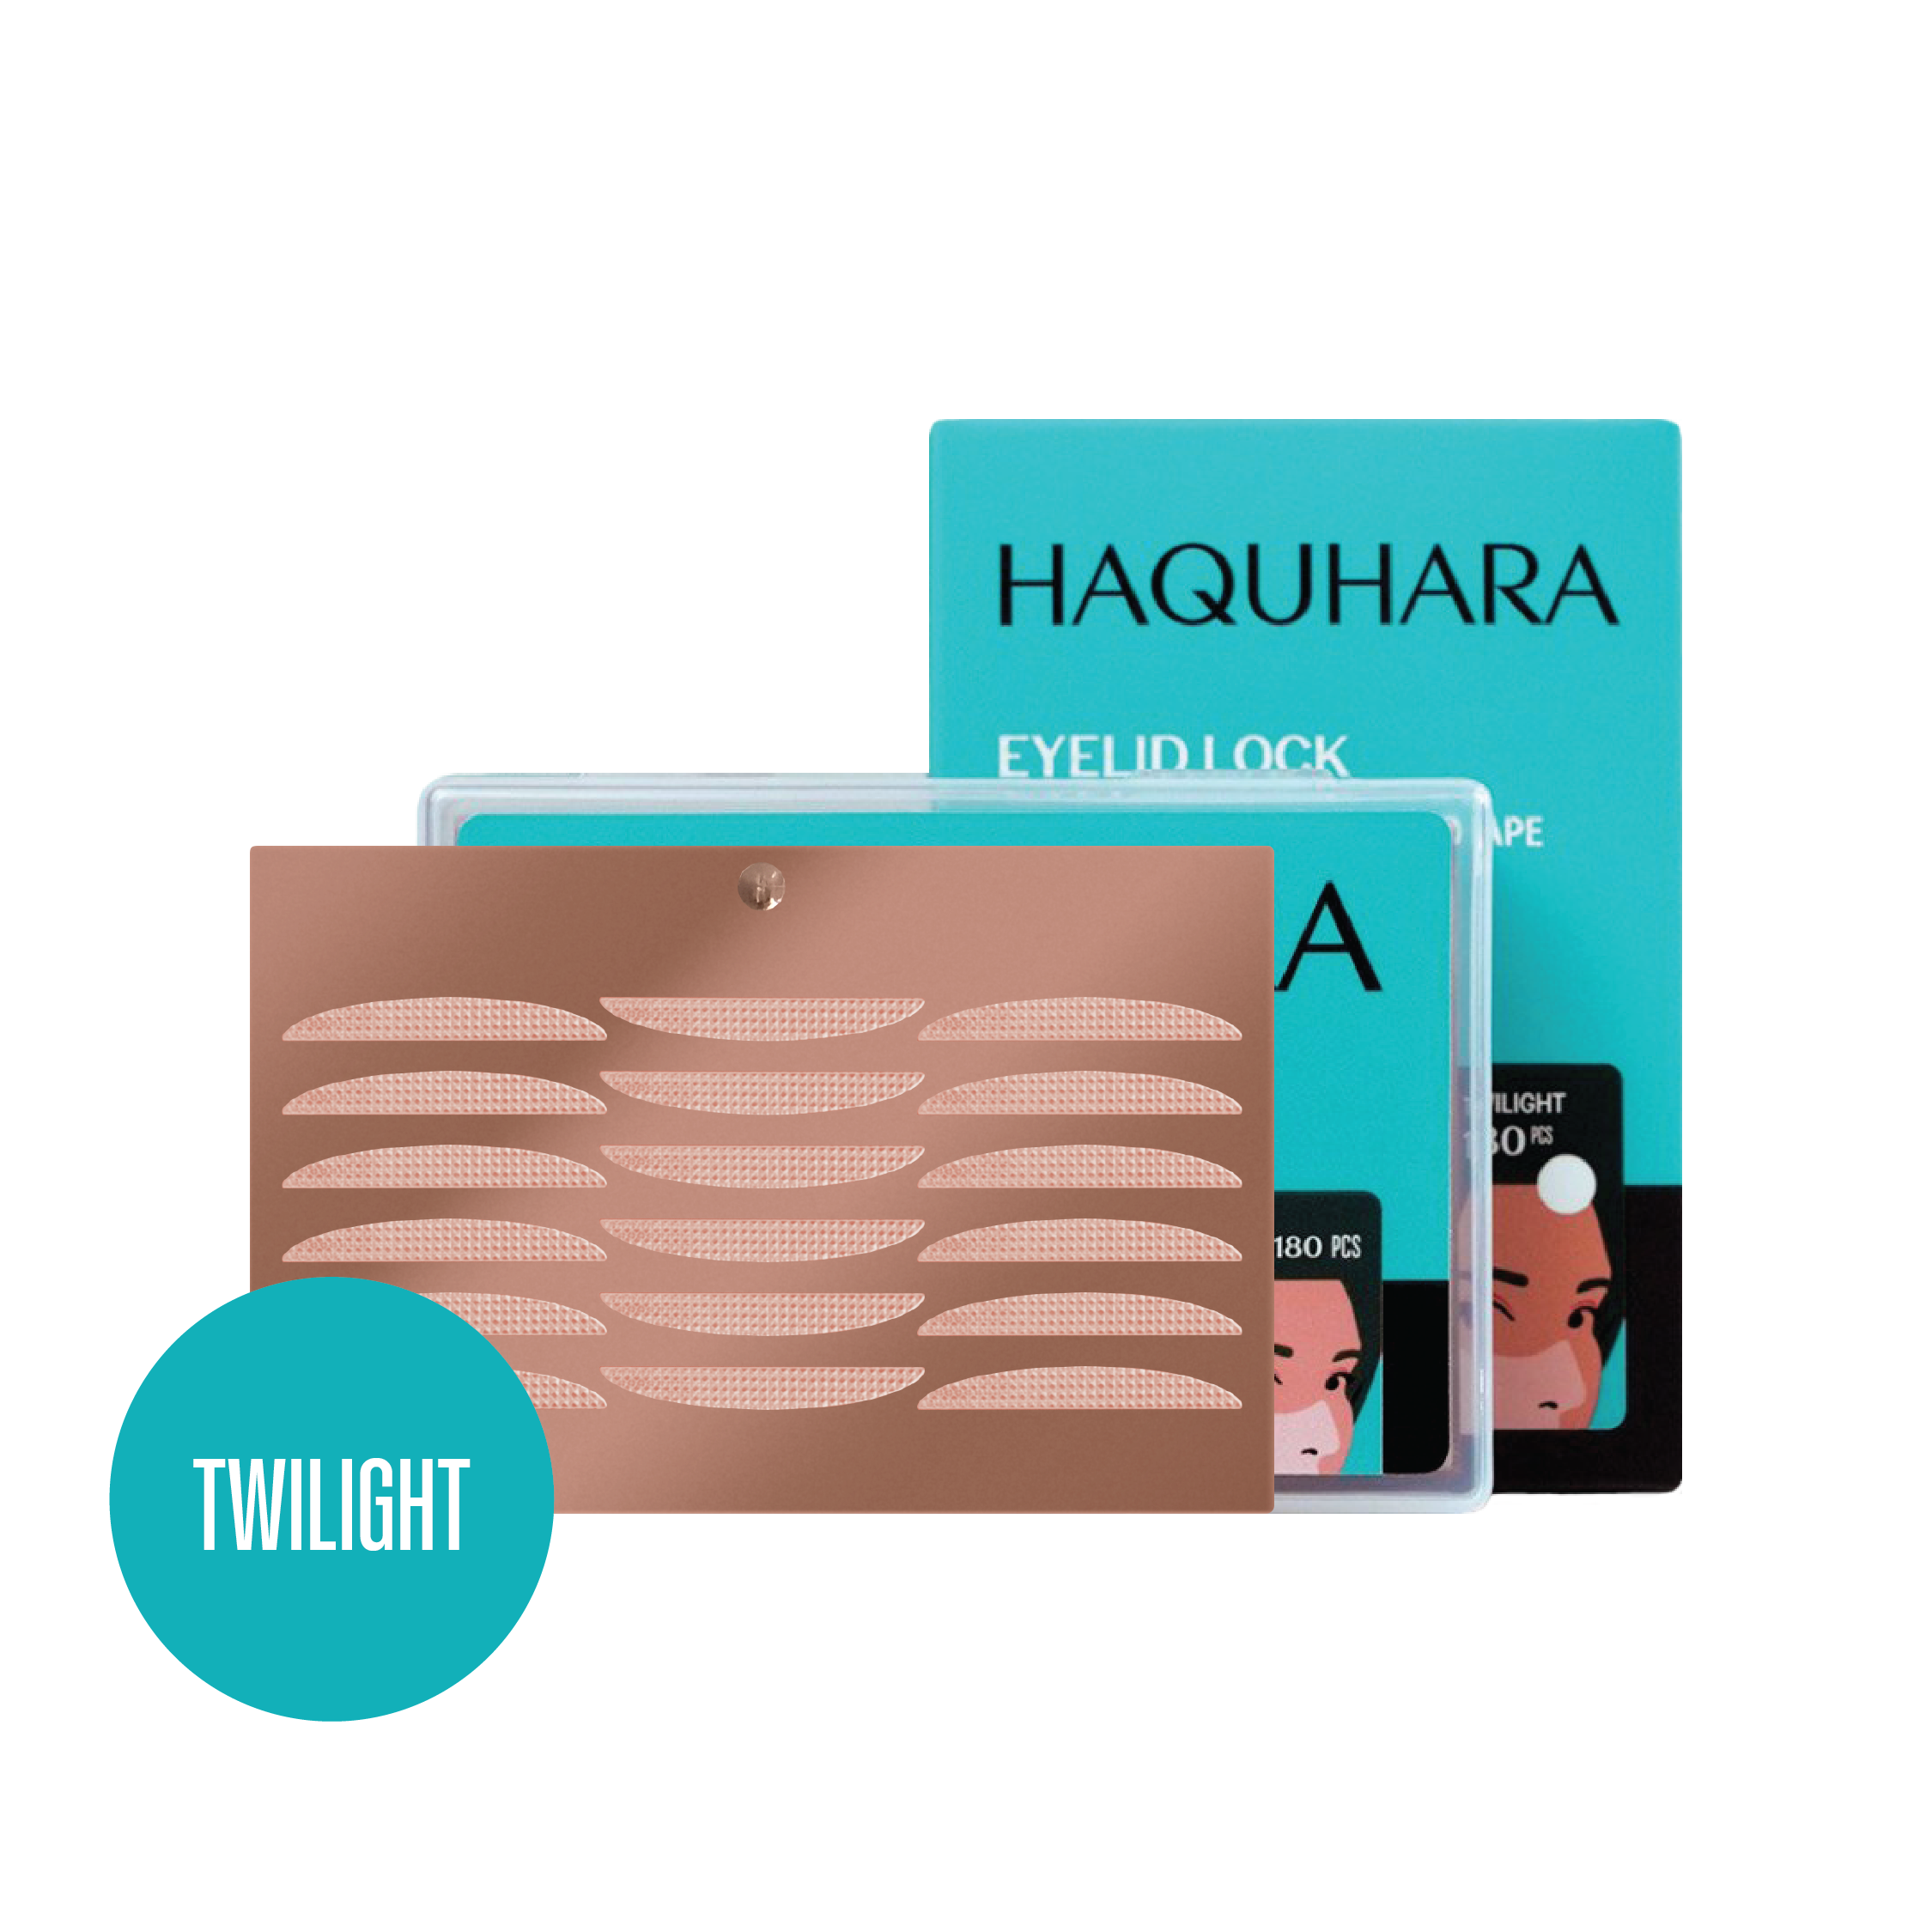 Haquhara Eyelid Lock Twilight / Eye Scots 3M Eyelid Tape Transparent Porous